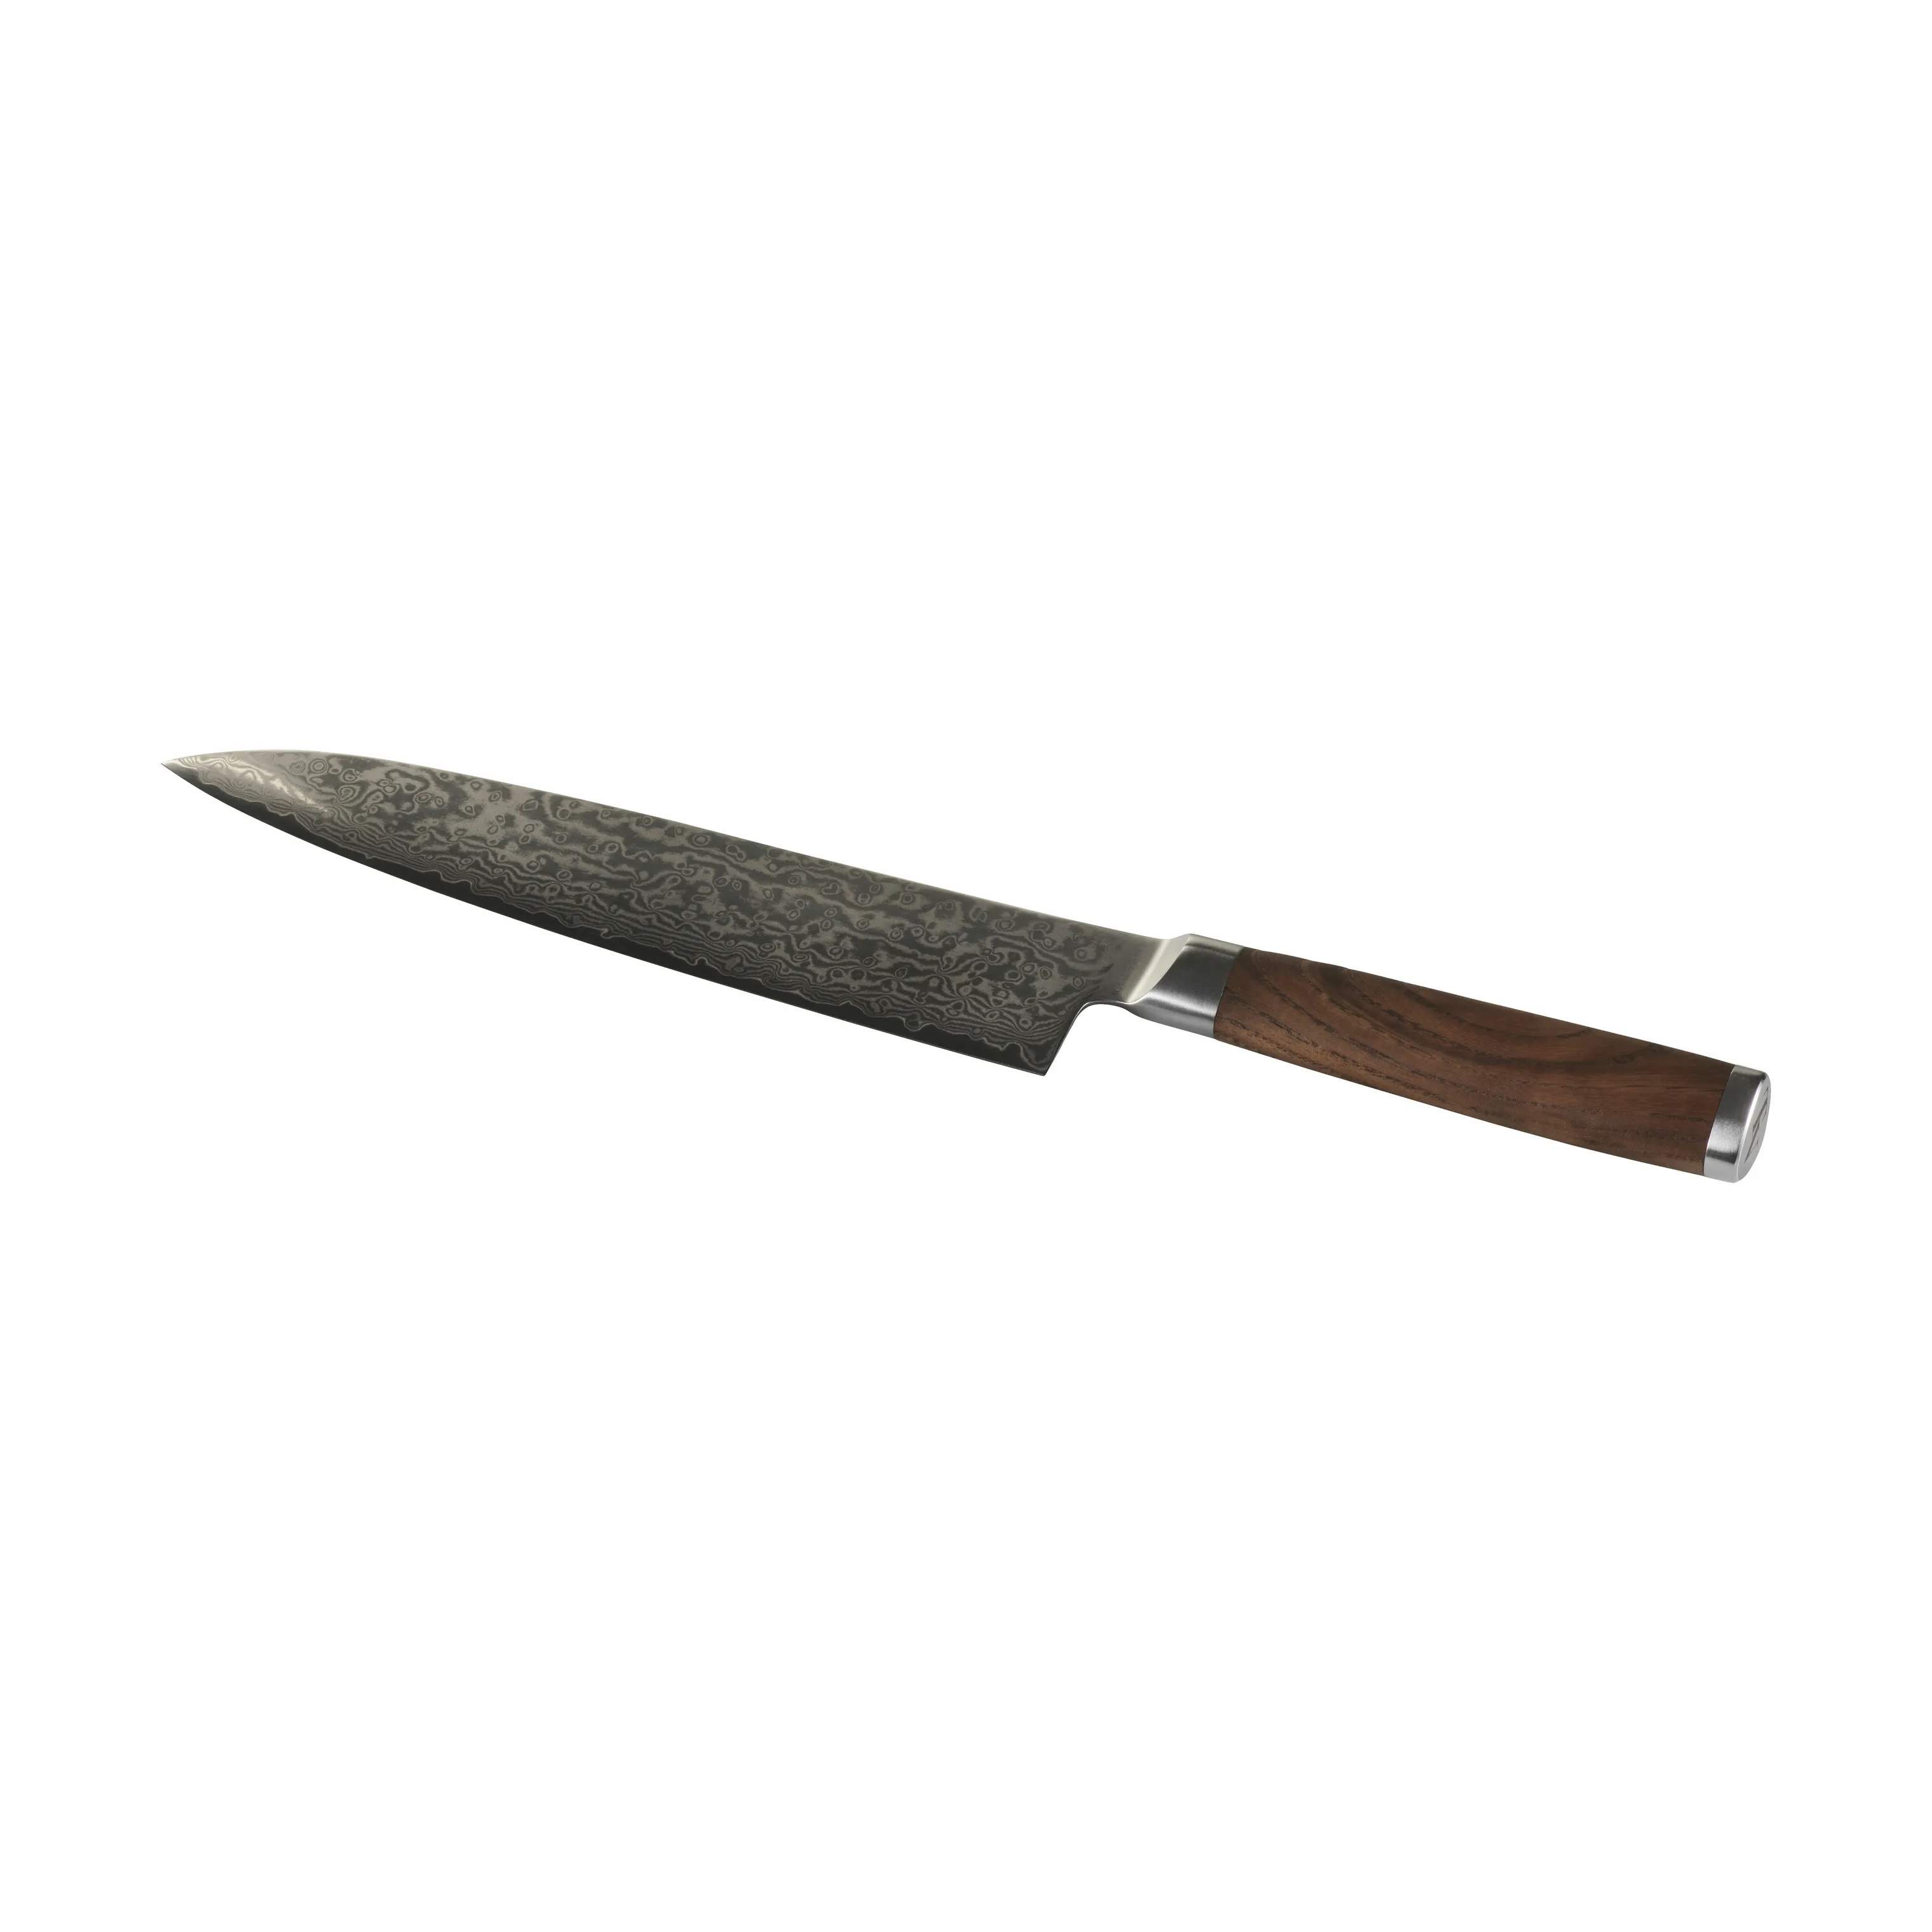 Kokkekniv, karboniseret ask, large